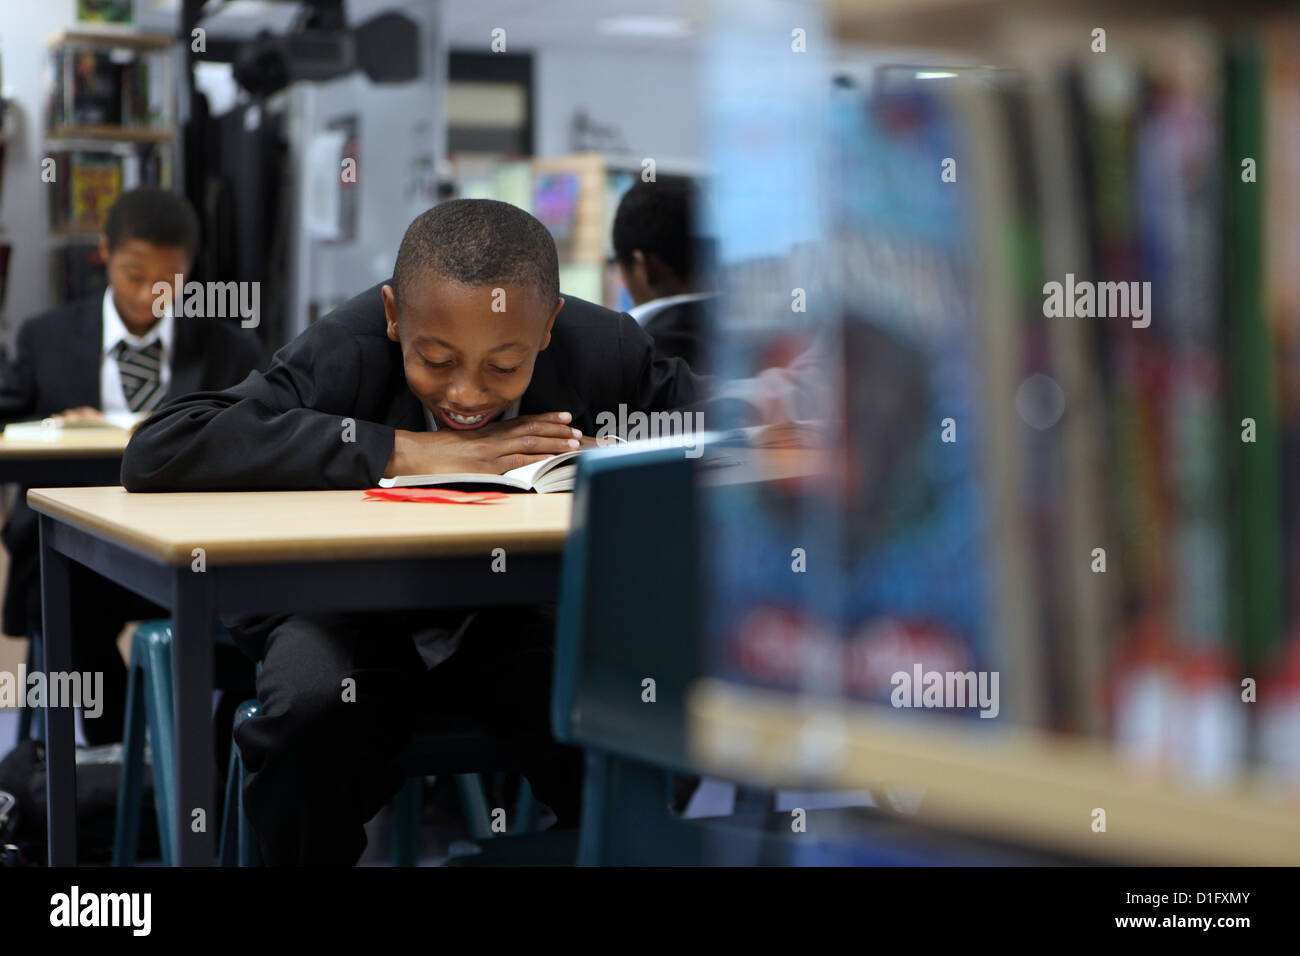 Les garçons afro-antillaise étudiant reading in library Banque D'Images